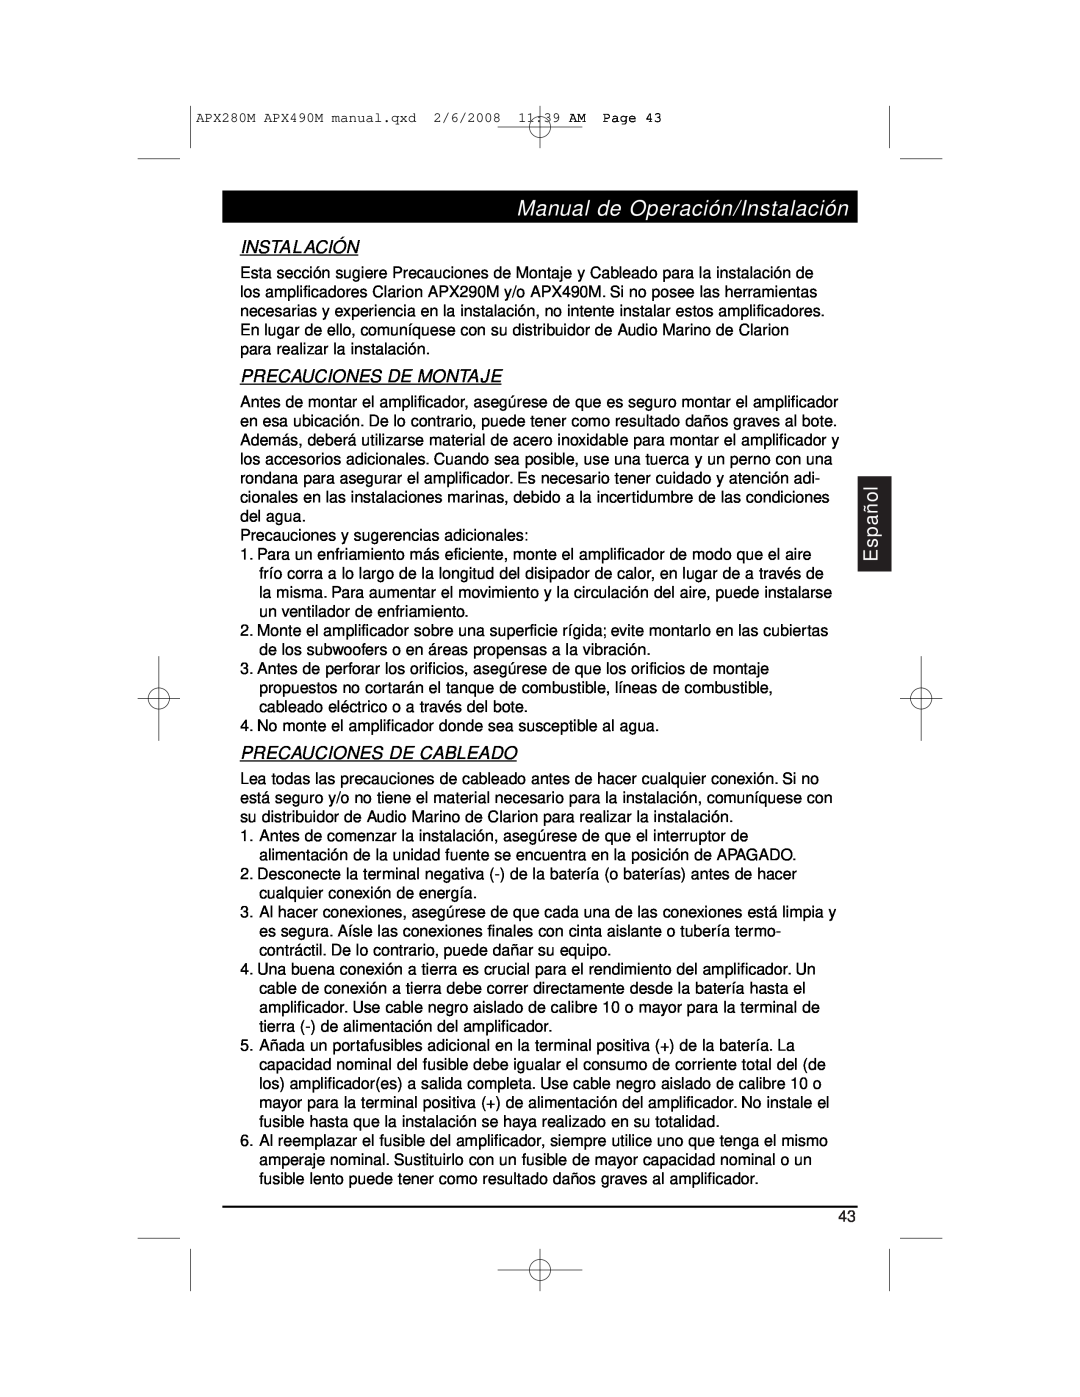 Clarion APX290M Precauciones De Montaje, Precauciones De Cableado, Manual de Operación/Instalación, Español 